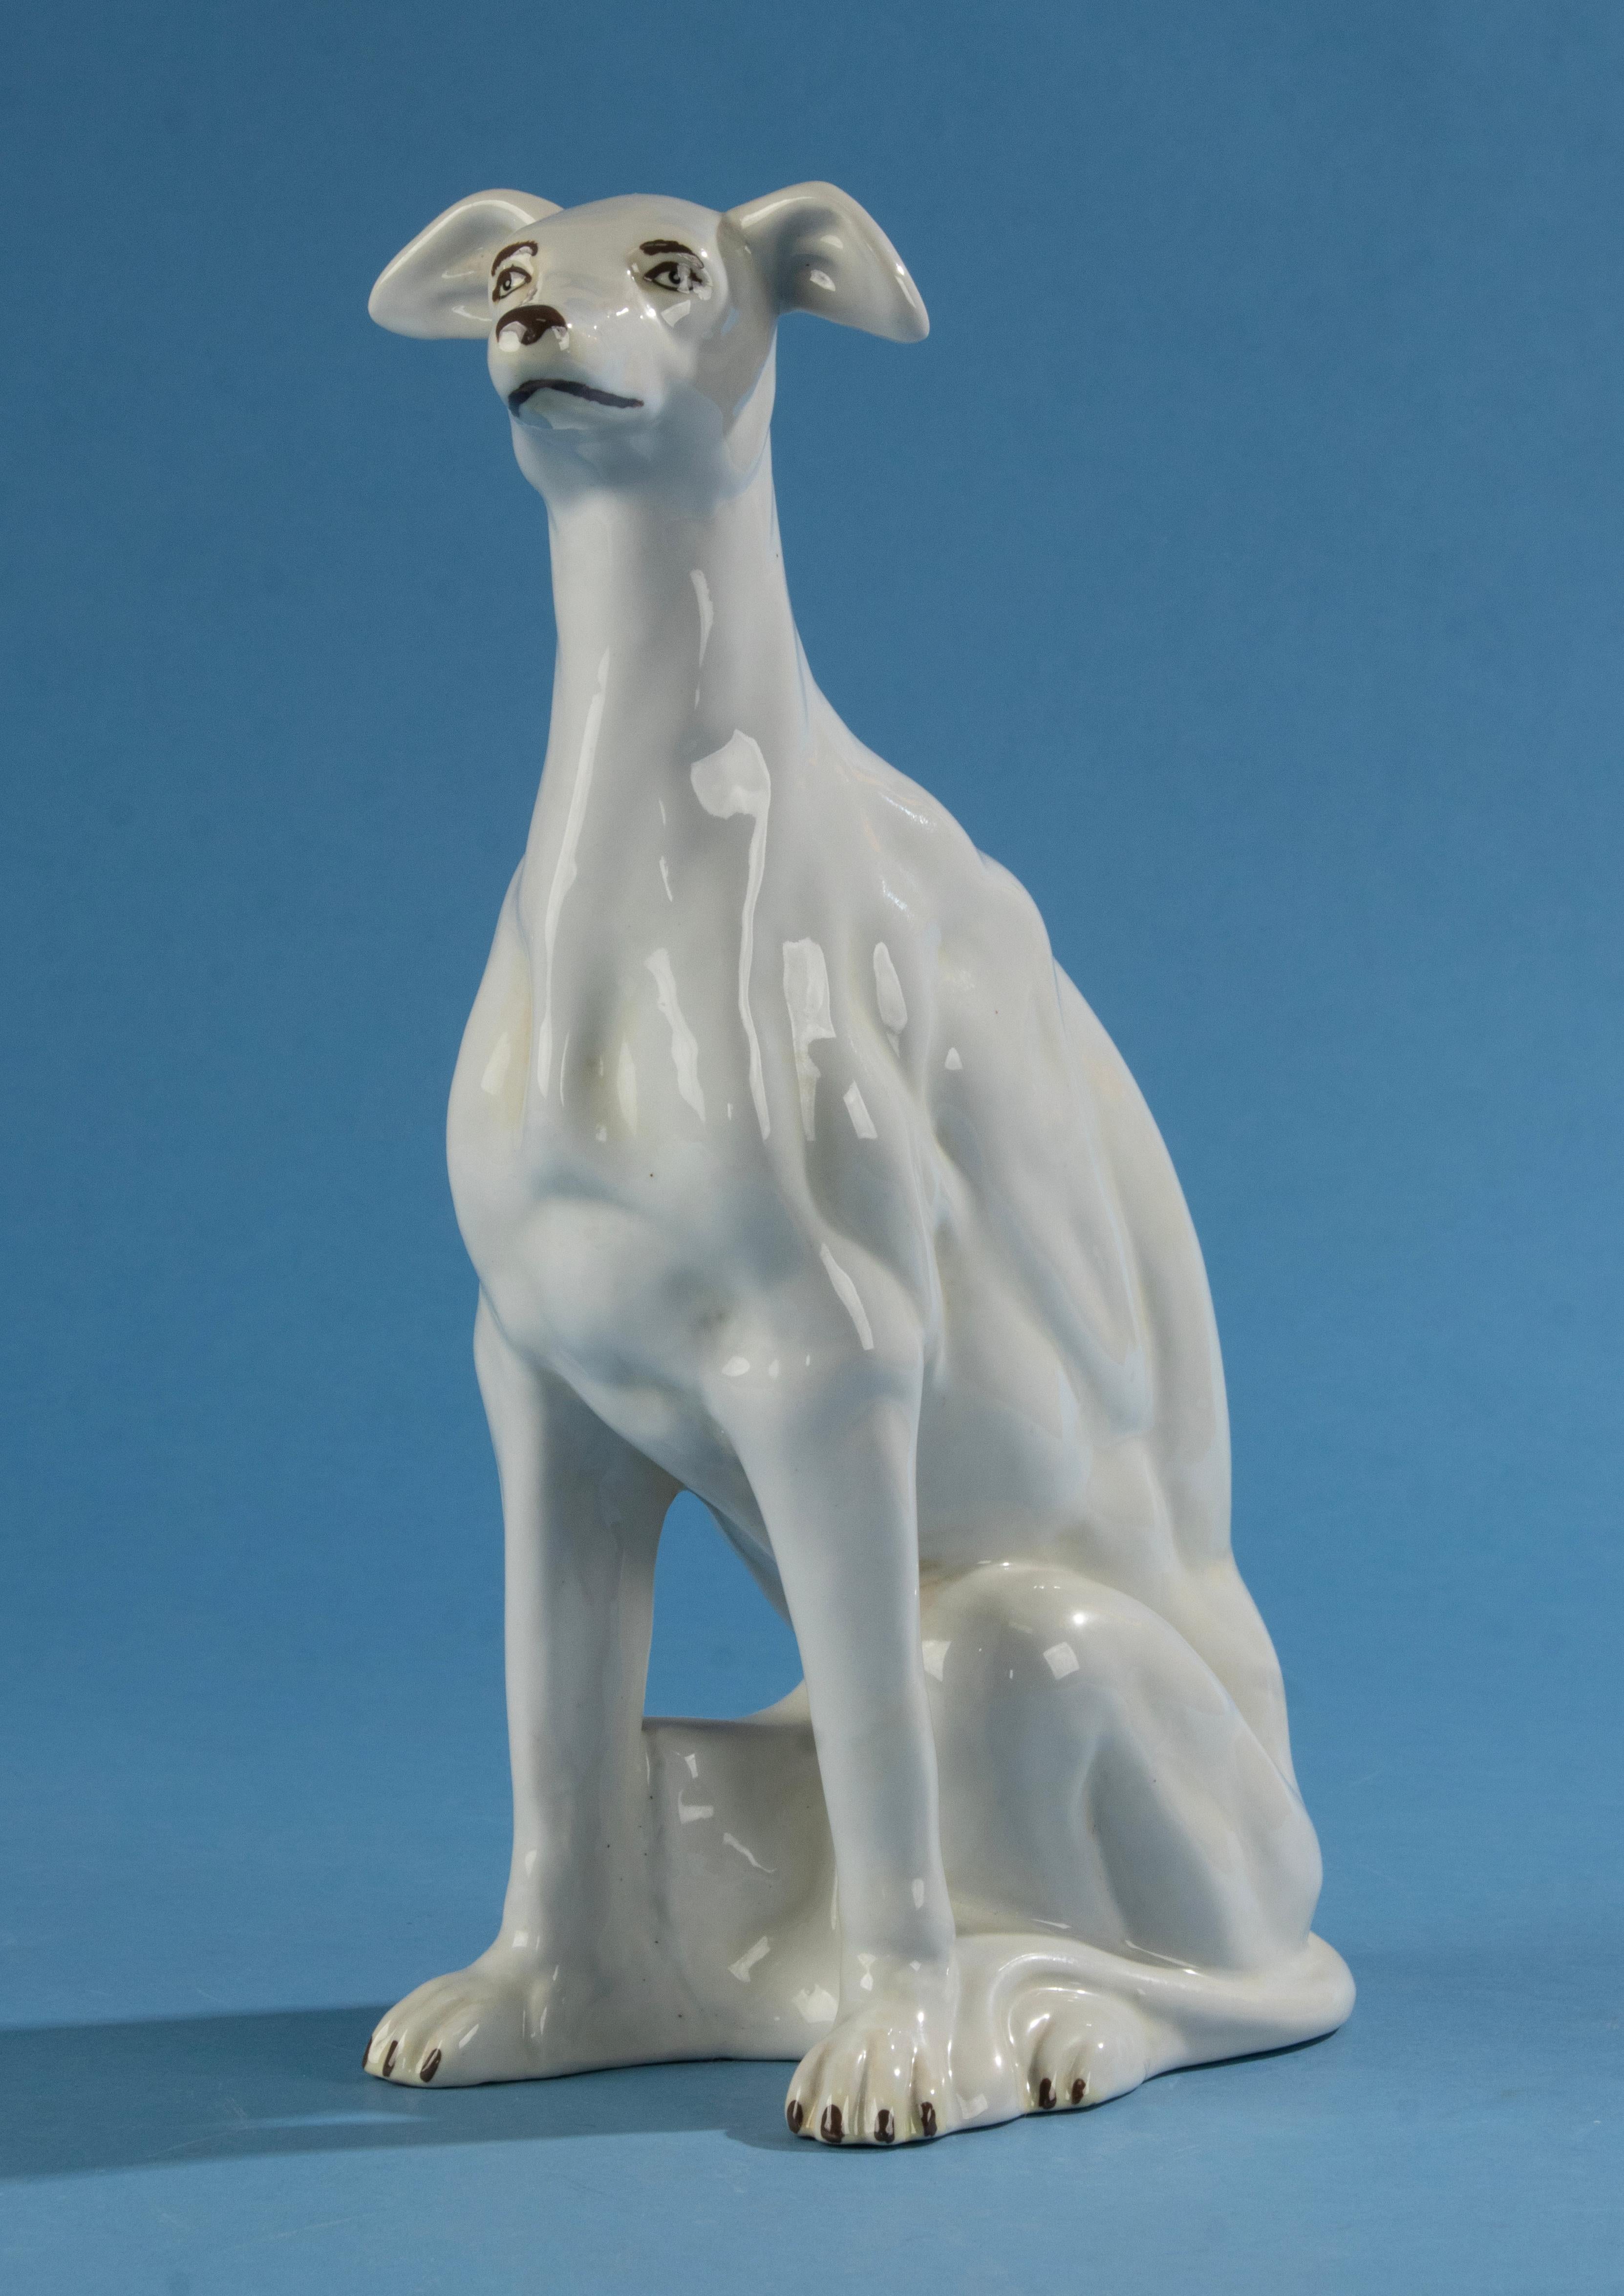 Eine schöne Porzellanfigur eines Windhundes. 
Die Figur ist nicht gekennzeichnet, der Hersteller ist unbekannt. Wahrscheinlich Italienisch. 
Die Figur hat eine schöne Farbe und sehr schöne Details in der Anatomie des Hundes. 

Die Figur ist 30 cm